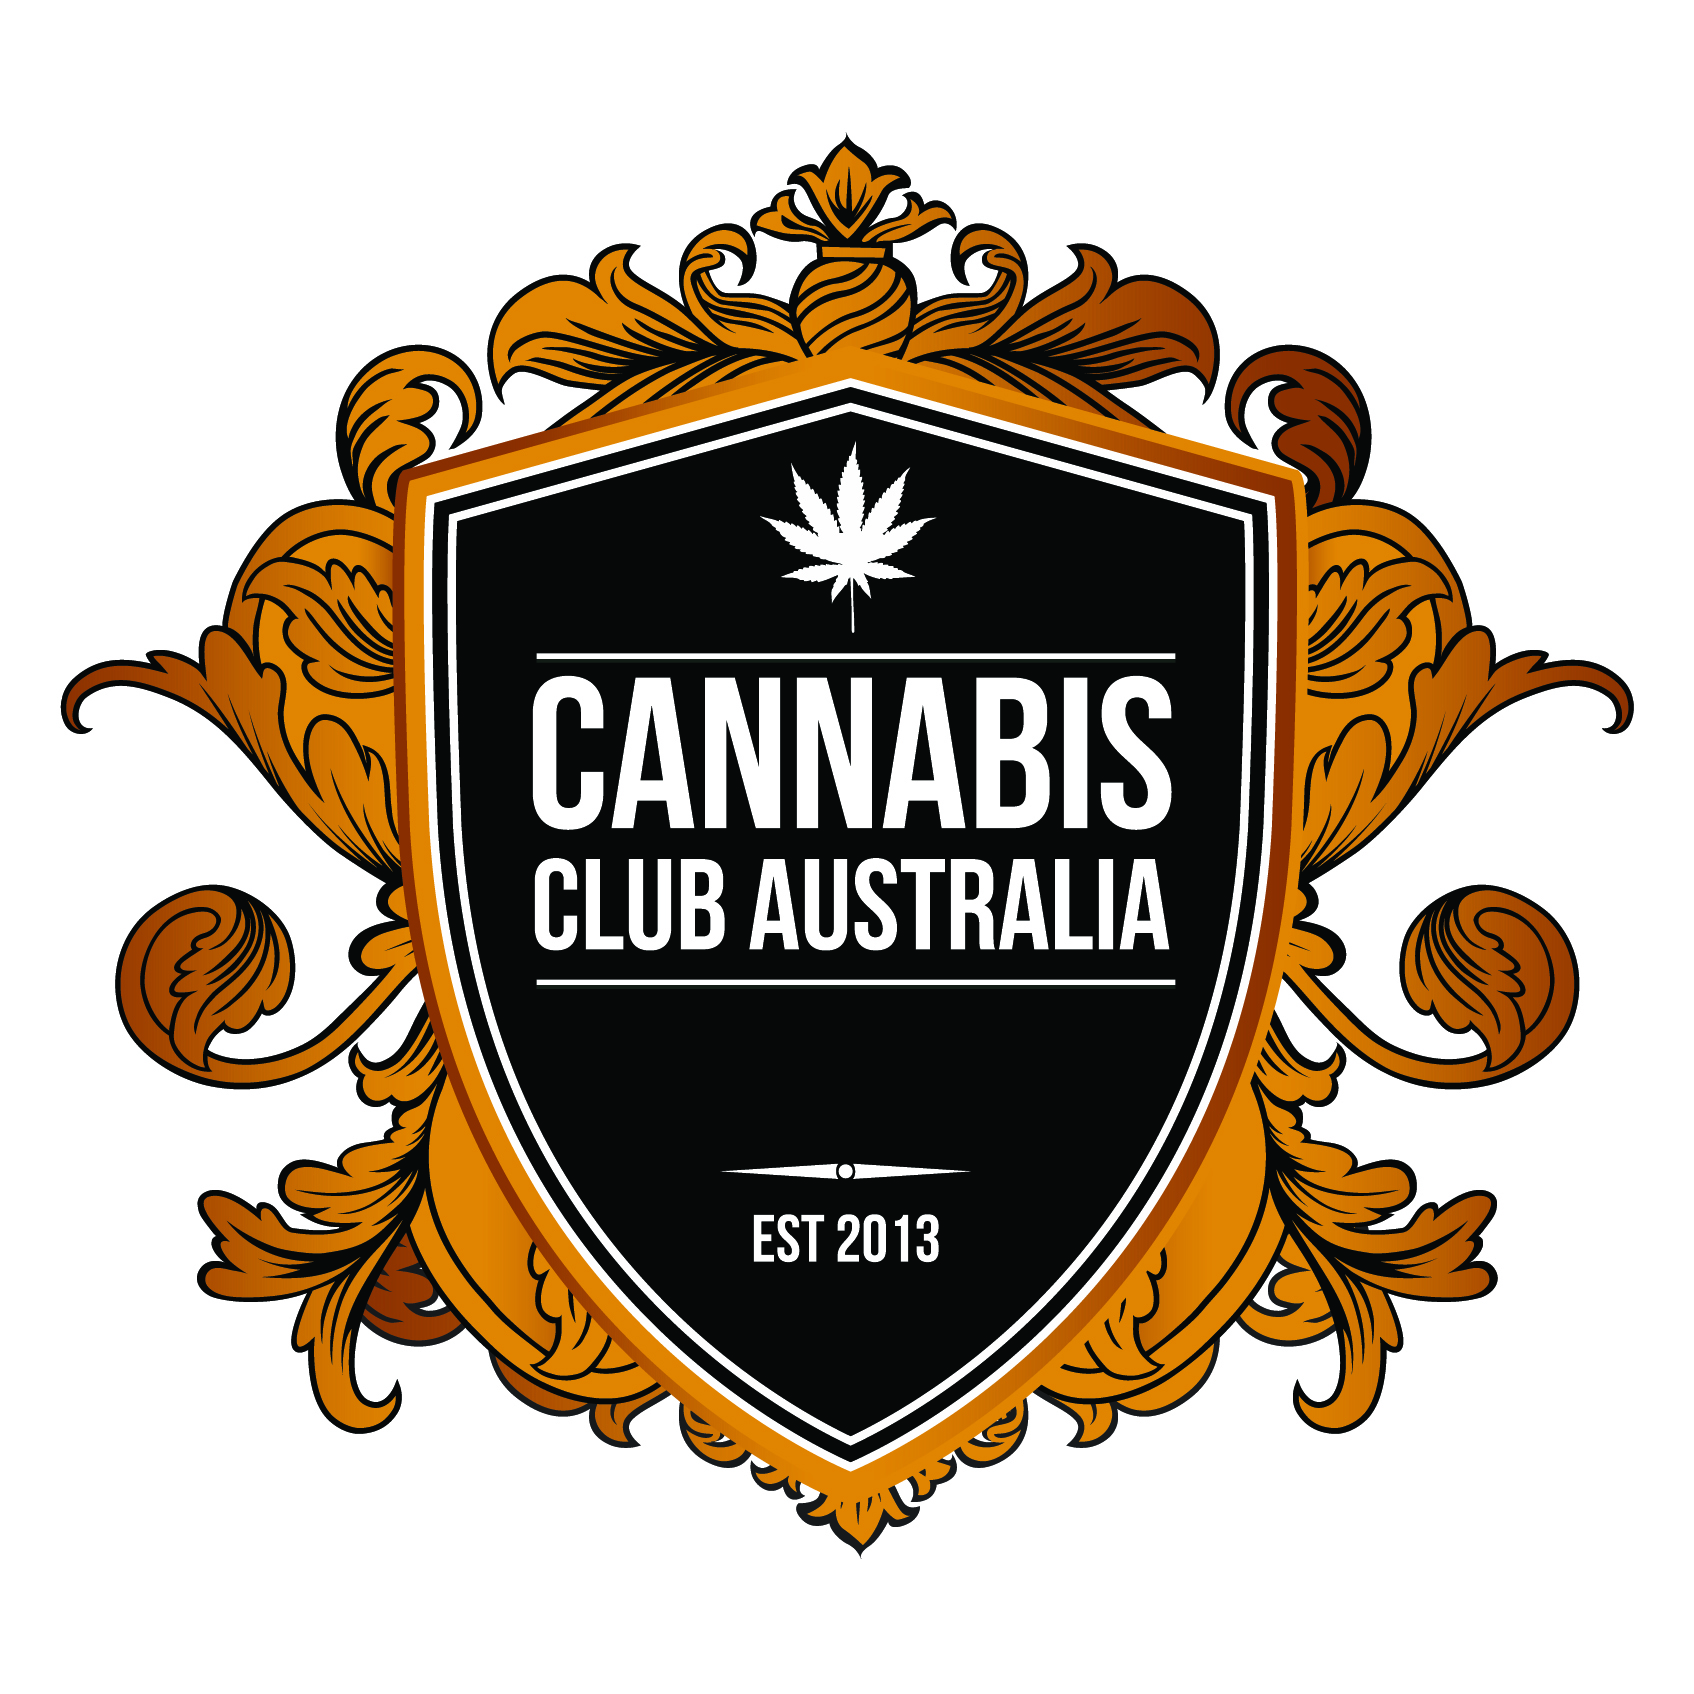 Cannabis Club Australia EST 2013